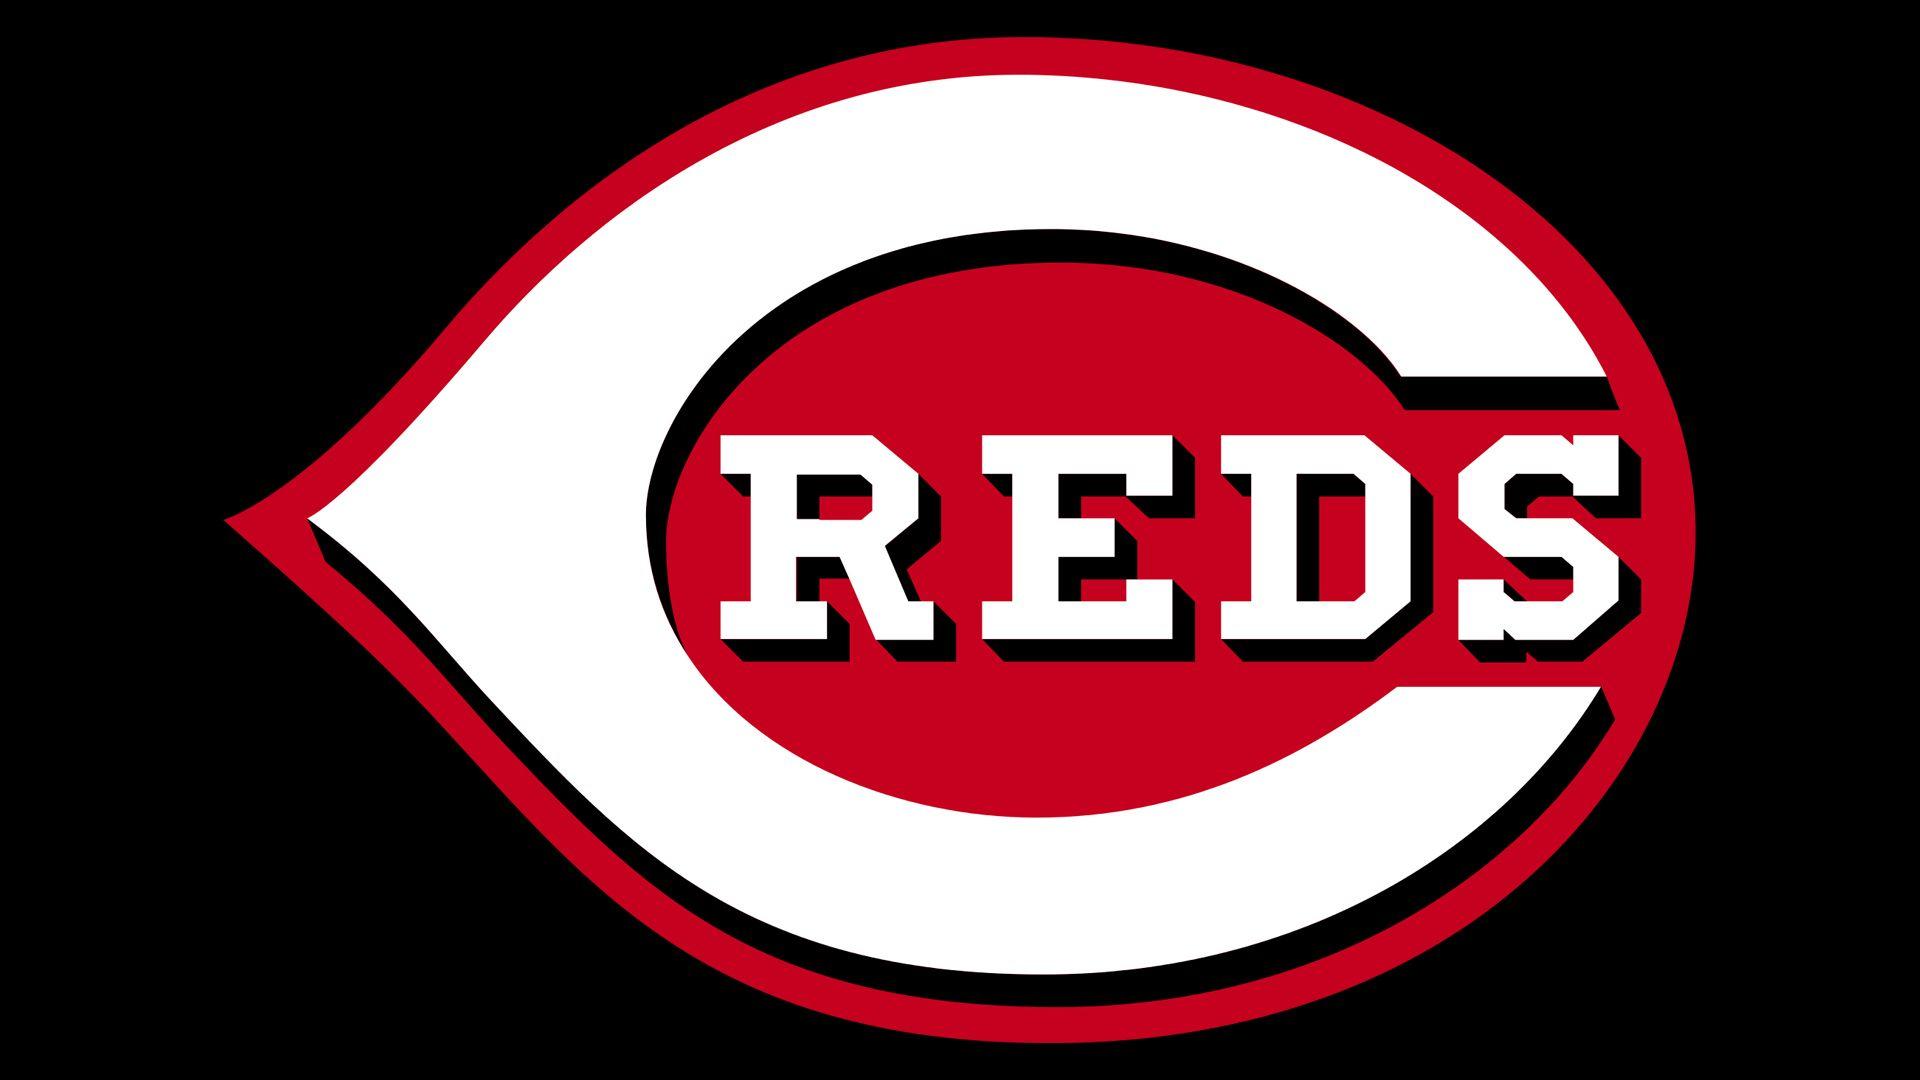 New Reds Logo - Cincinnati Reds Logo, Cincinnati Reds Symbol, Meaning, History